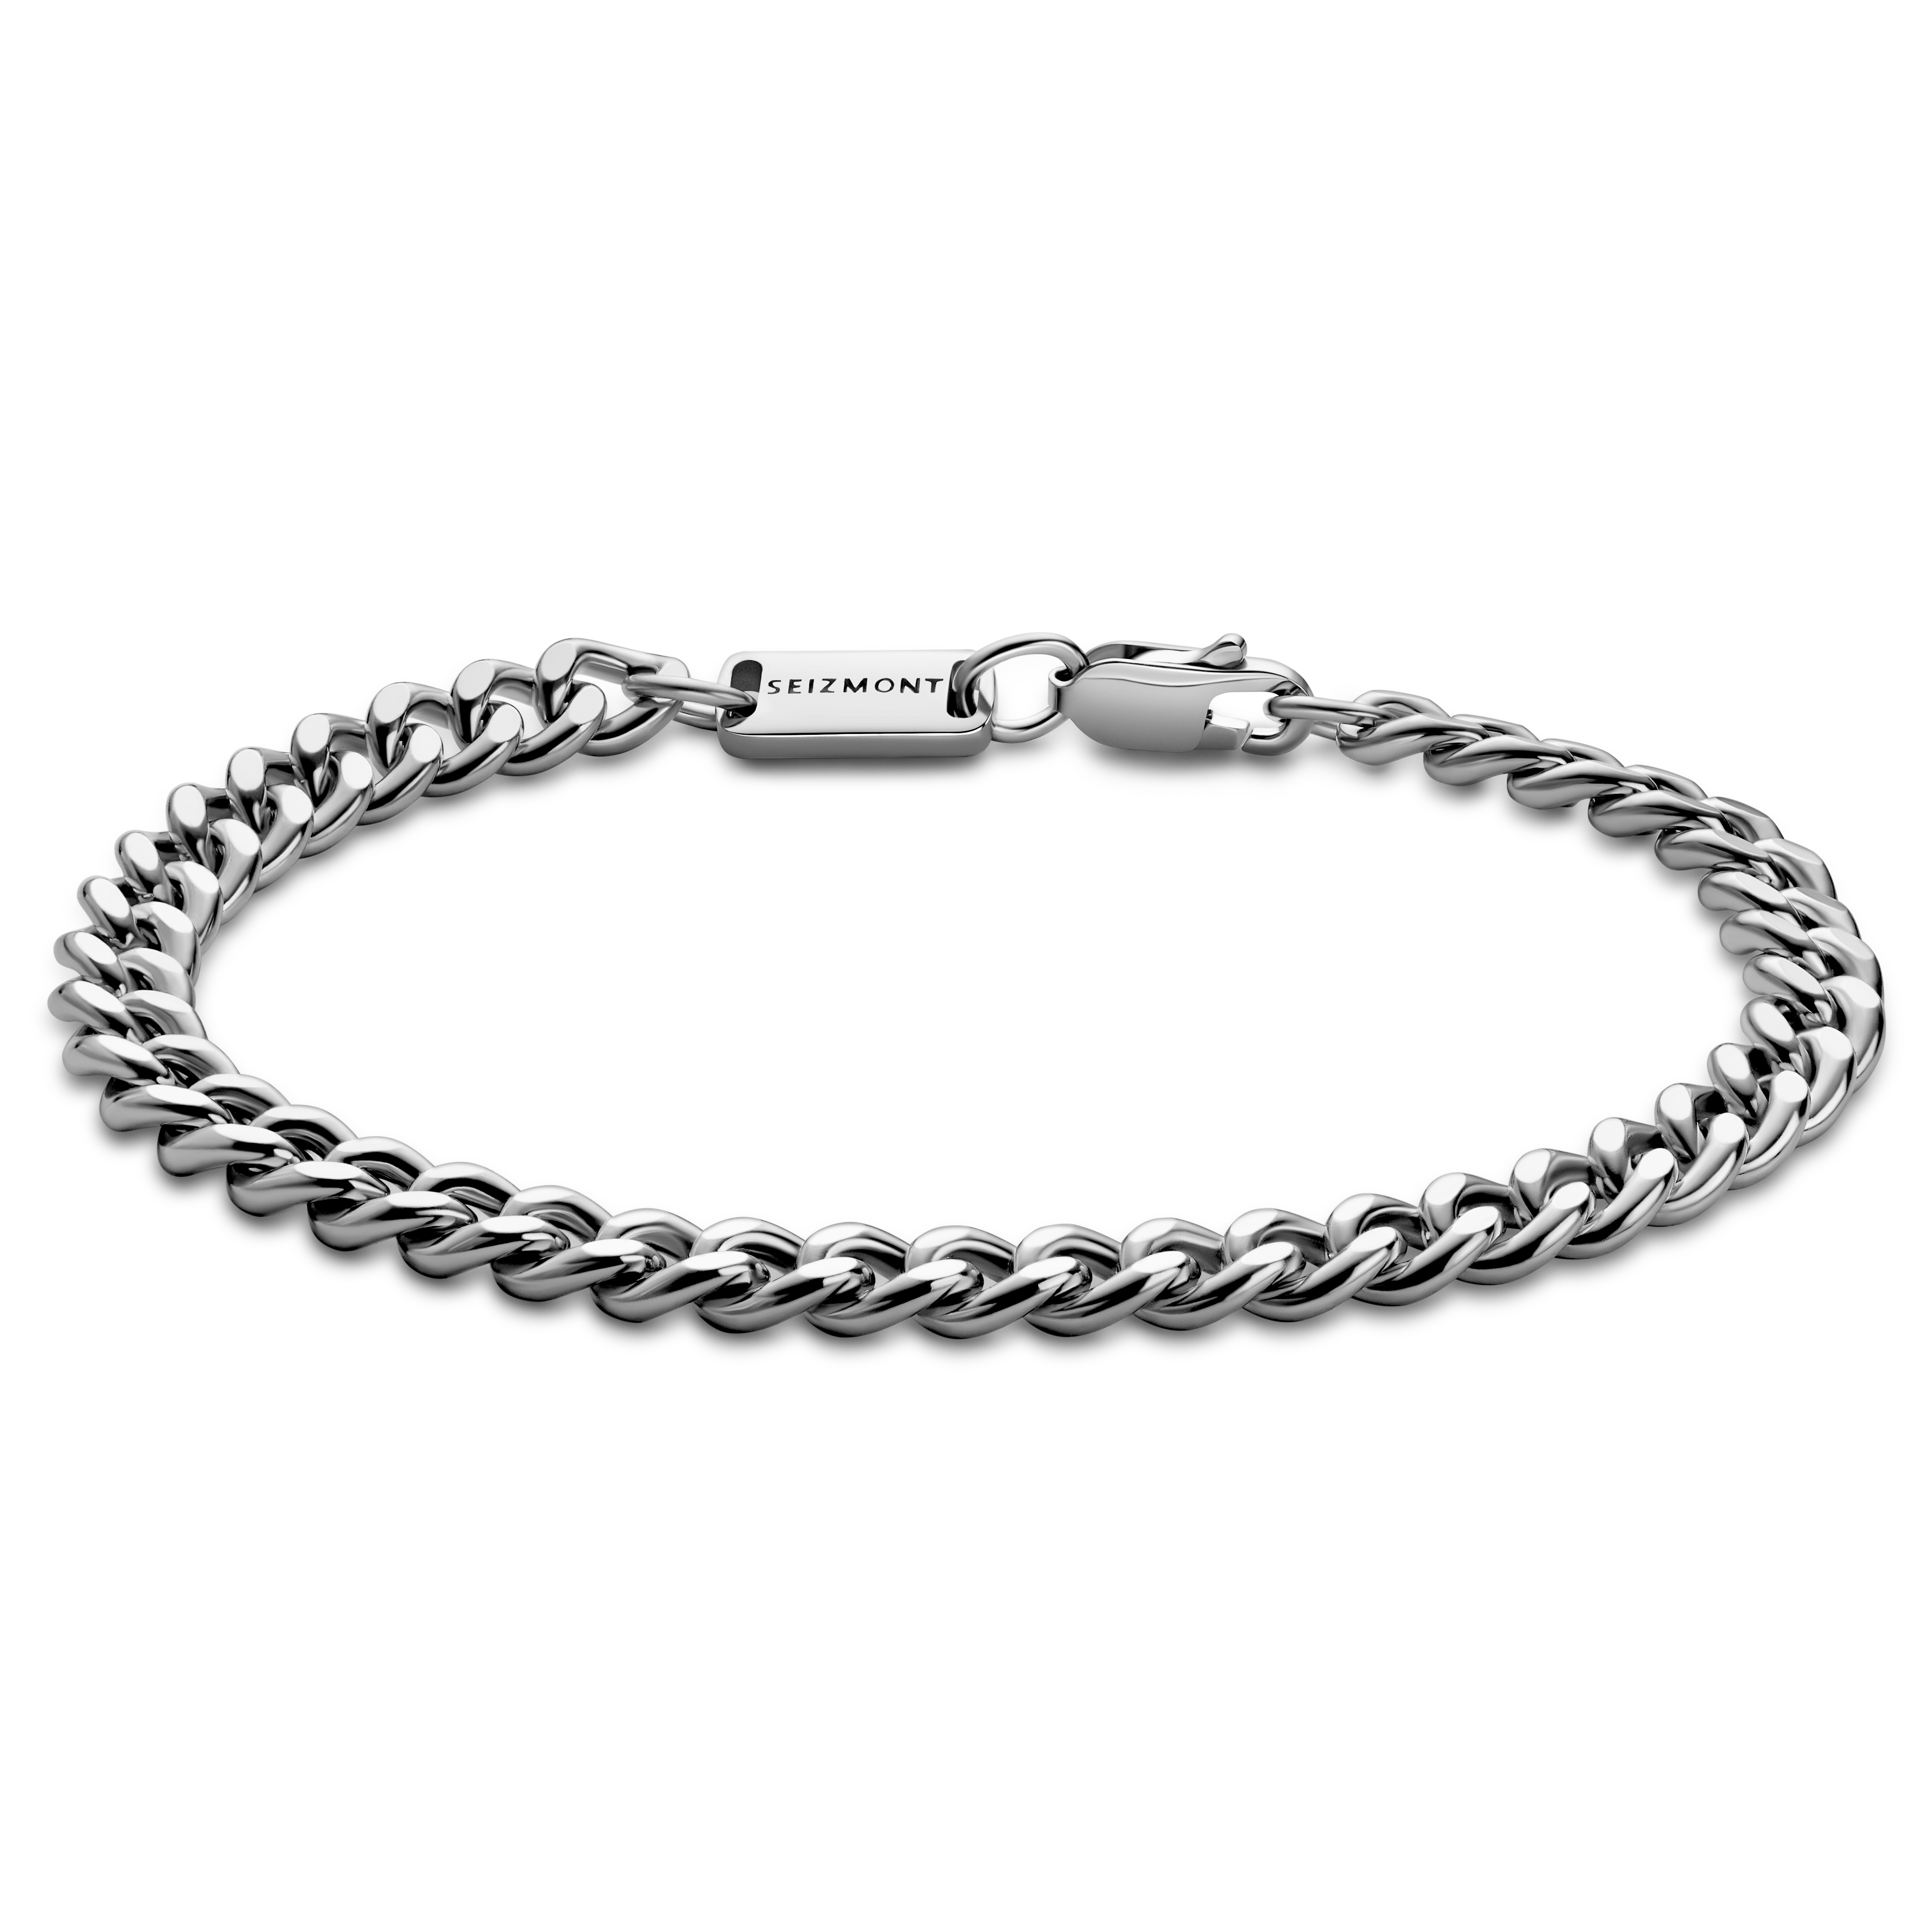 KENNEY: Speidel Rhodium Electroplated Link Engraved Bracelet | eBay